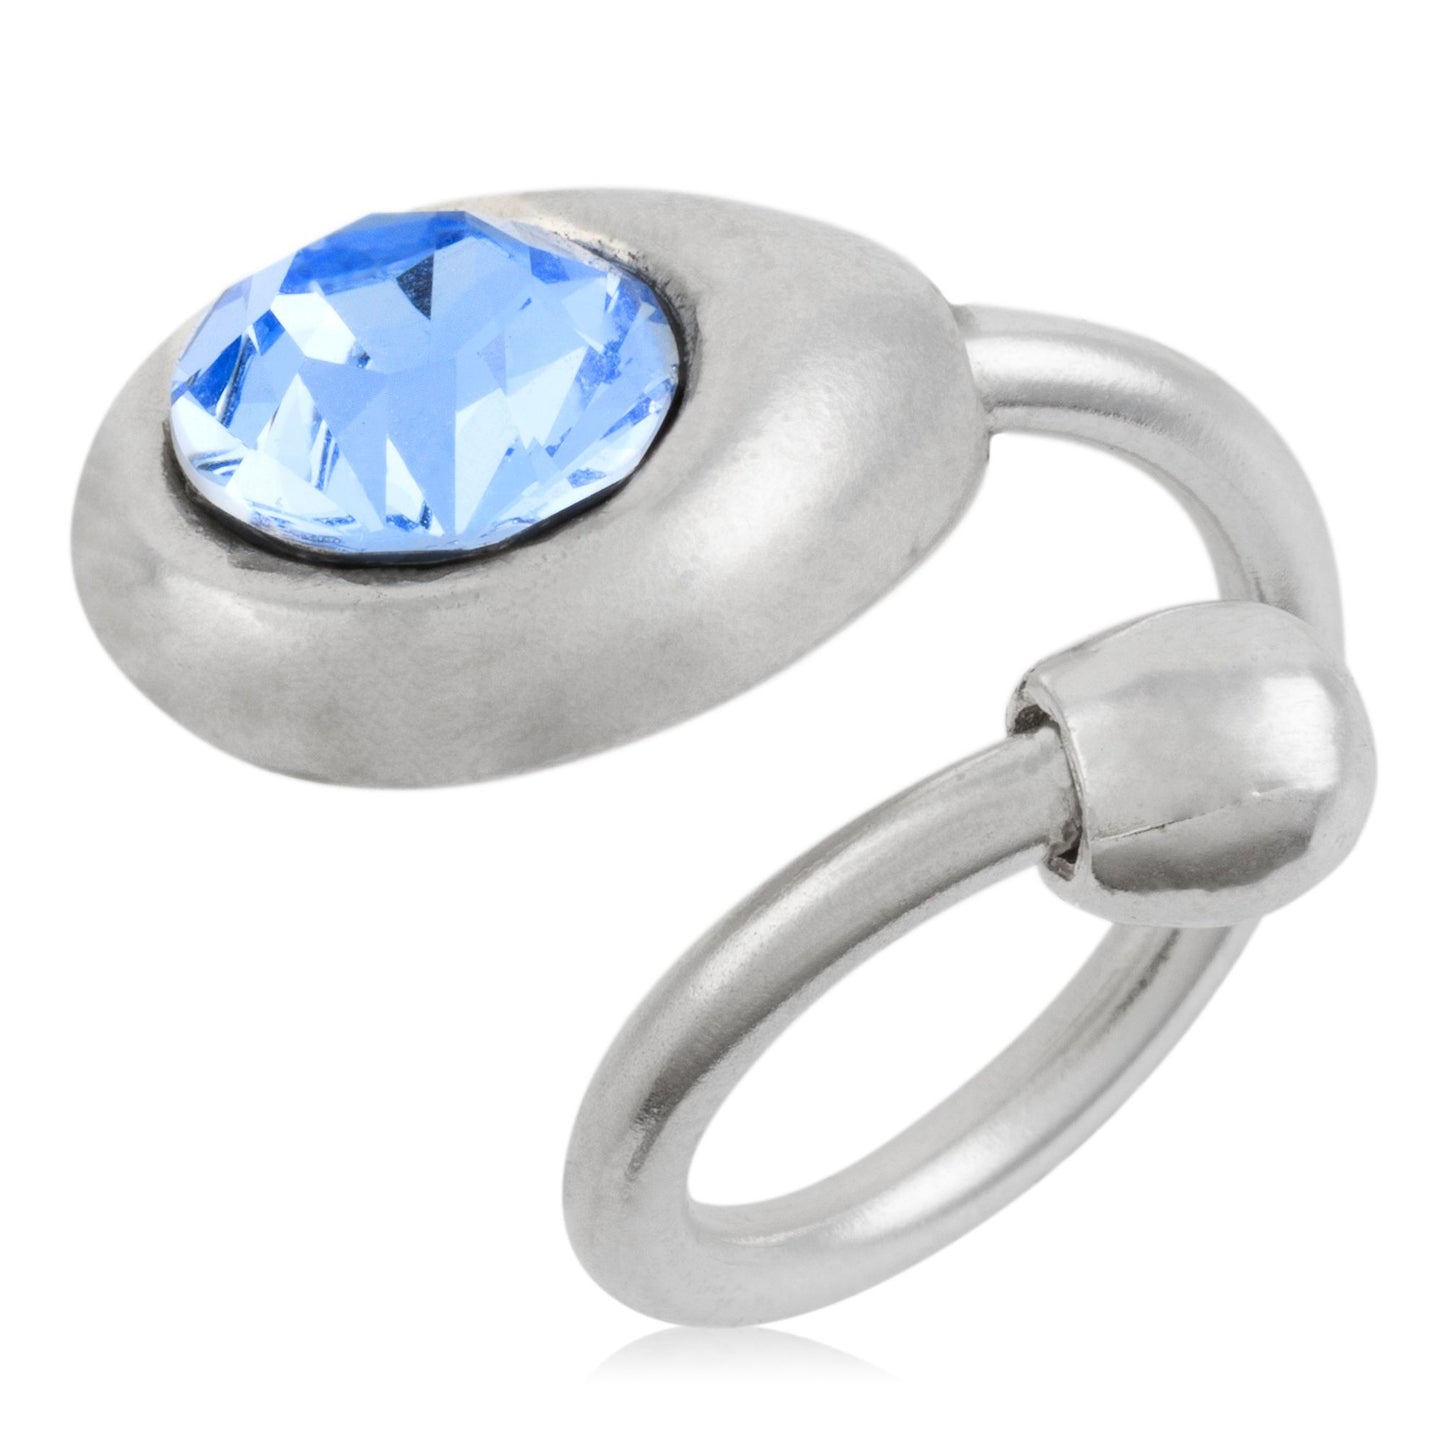 Anillo-Swarovski cristal azul plata925 chapado